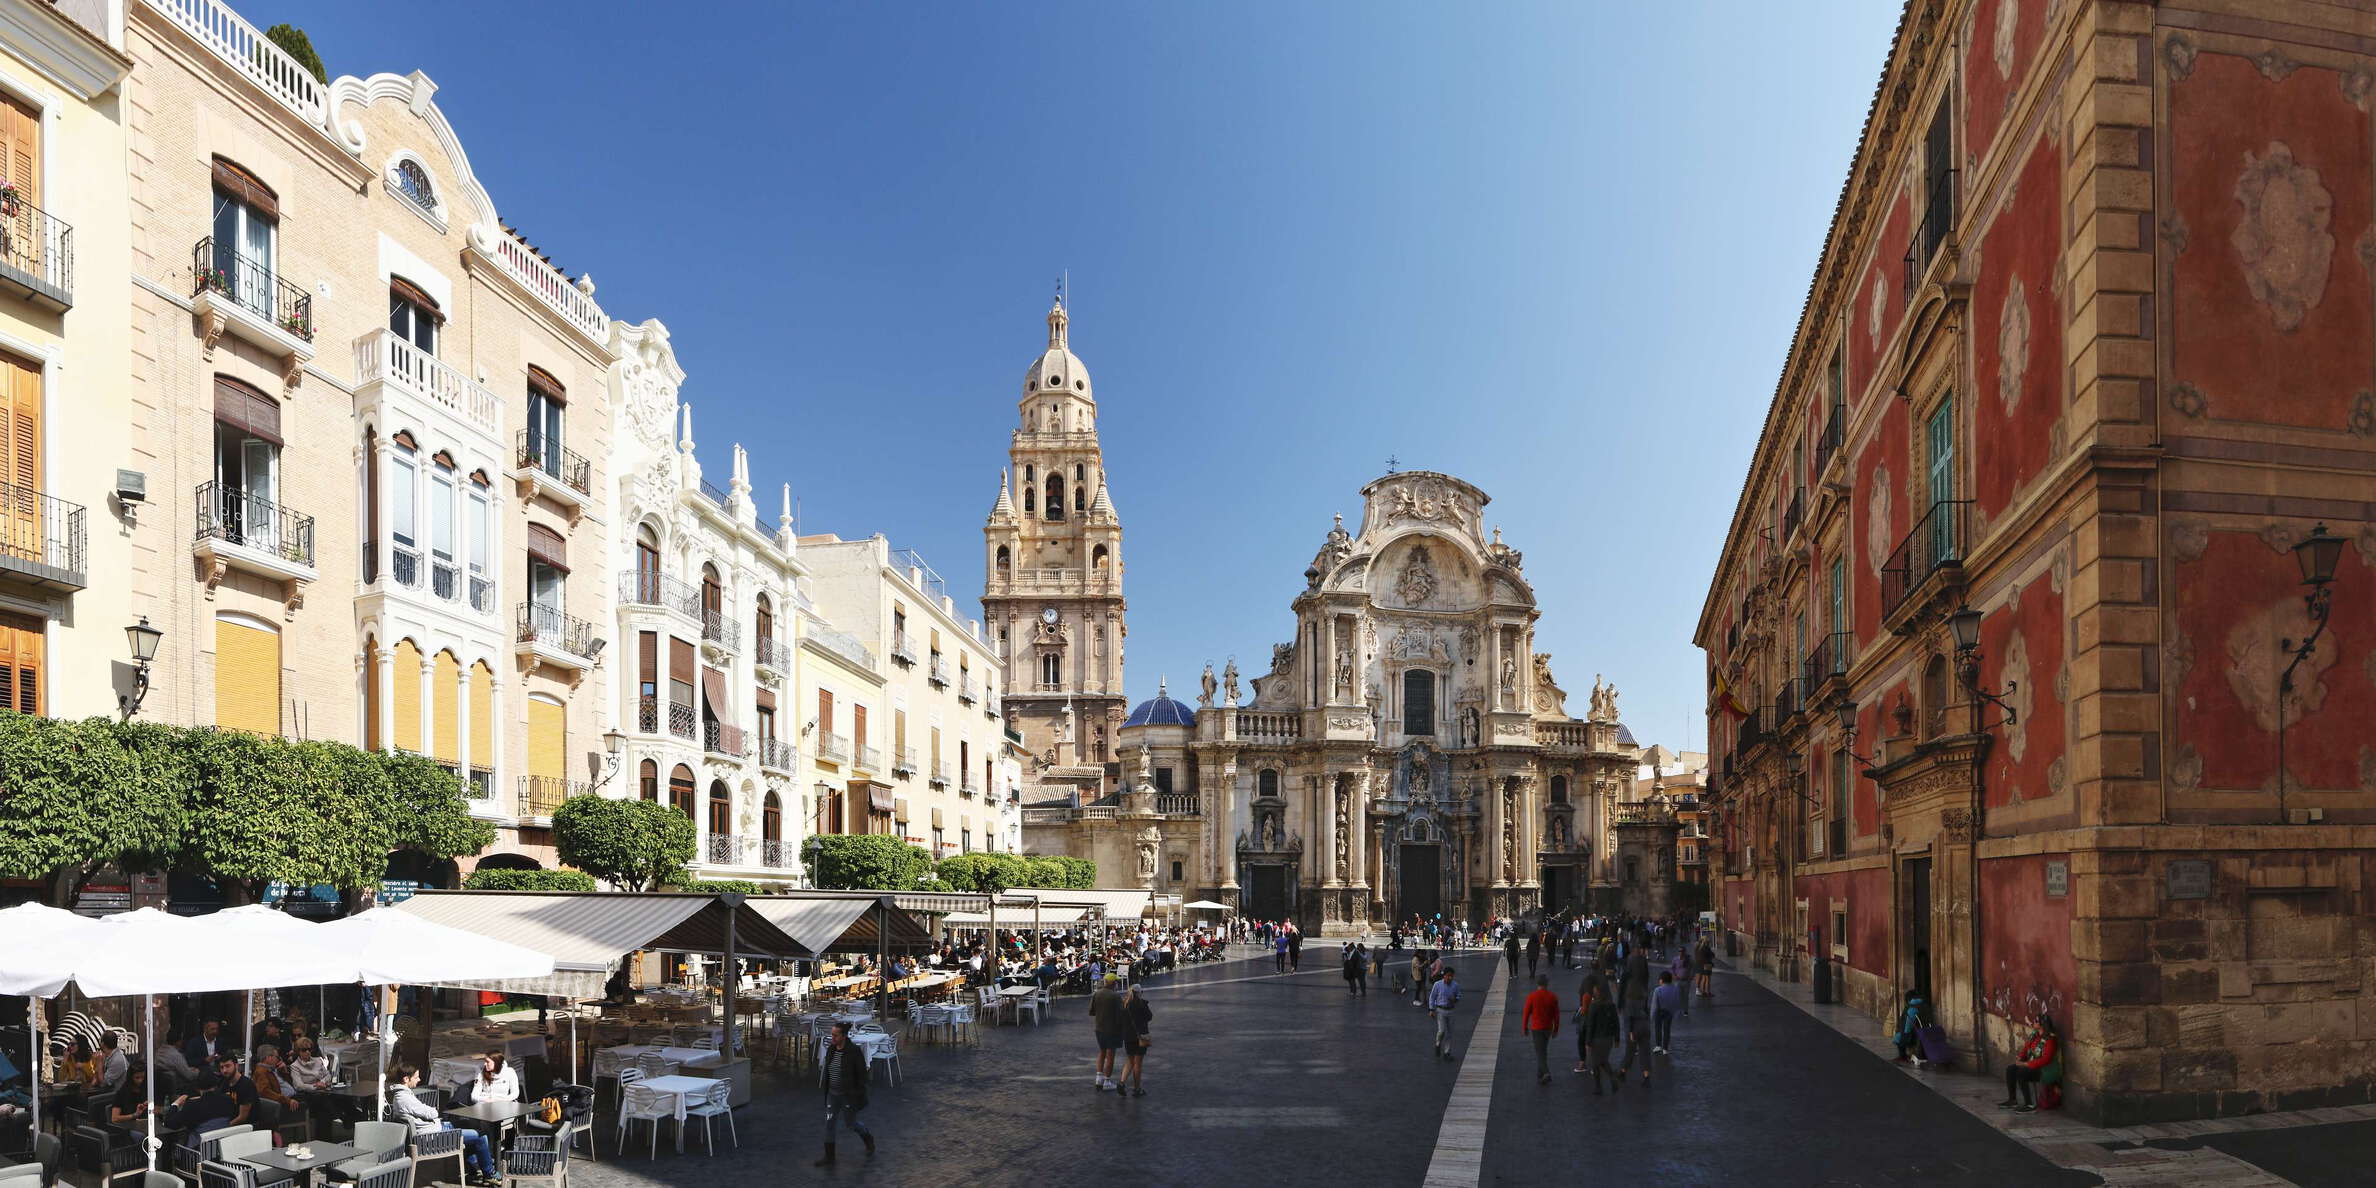 Murcia | Plaza del Cardenal Belluga